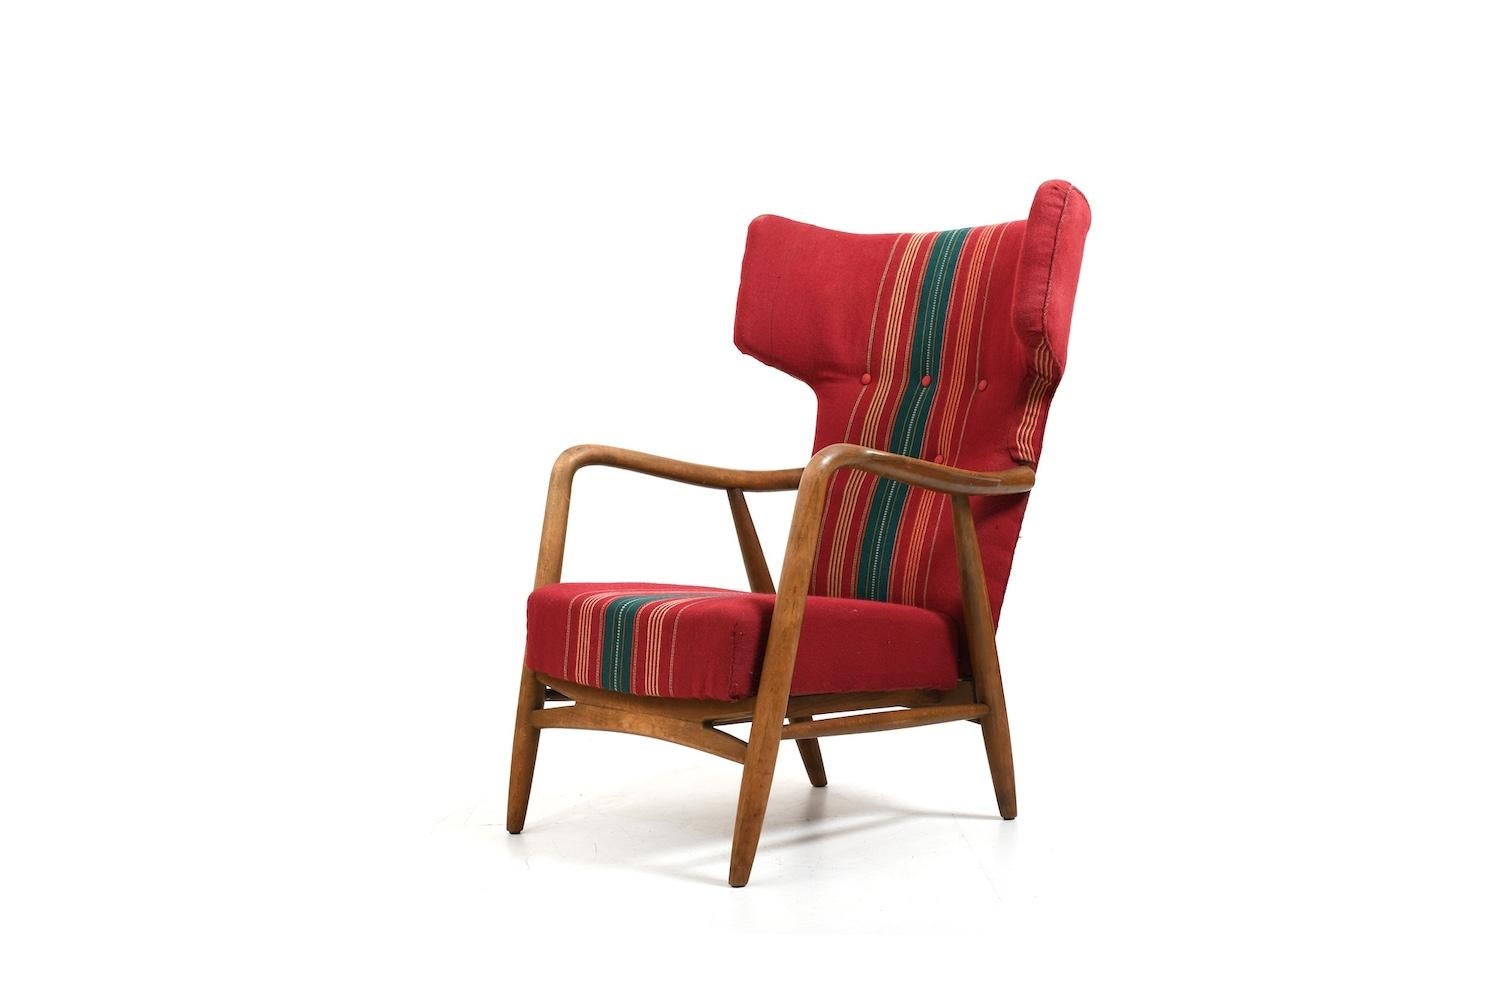 Chaise longue à dossier ailé Eva & Nils Koppel, conçue en 1947 pour Design/One Danemark. Prod. a. 1950. En état absolument original avec le premier tissu et la base en hêtre. Début de la production.